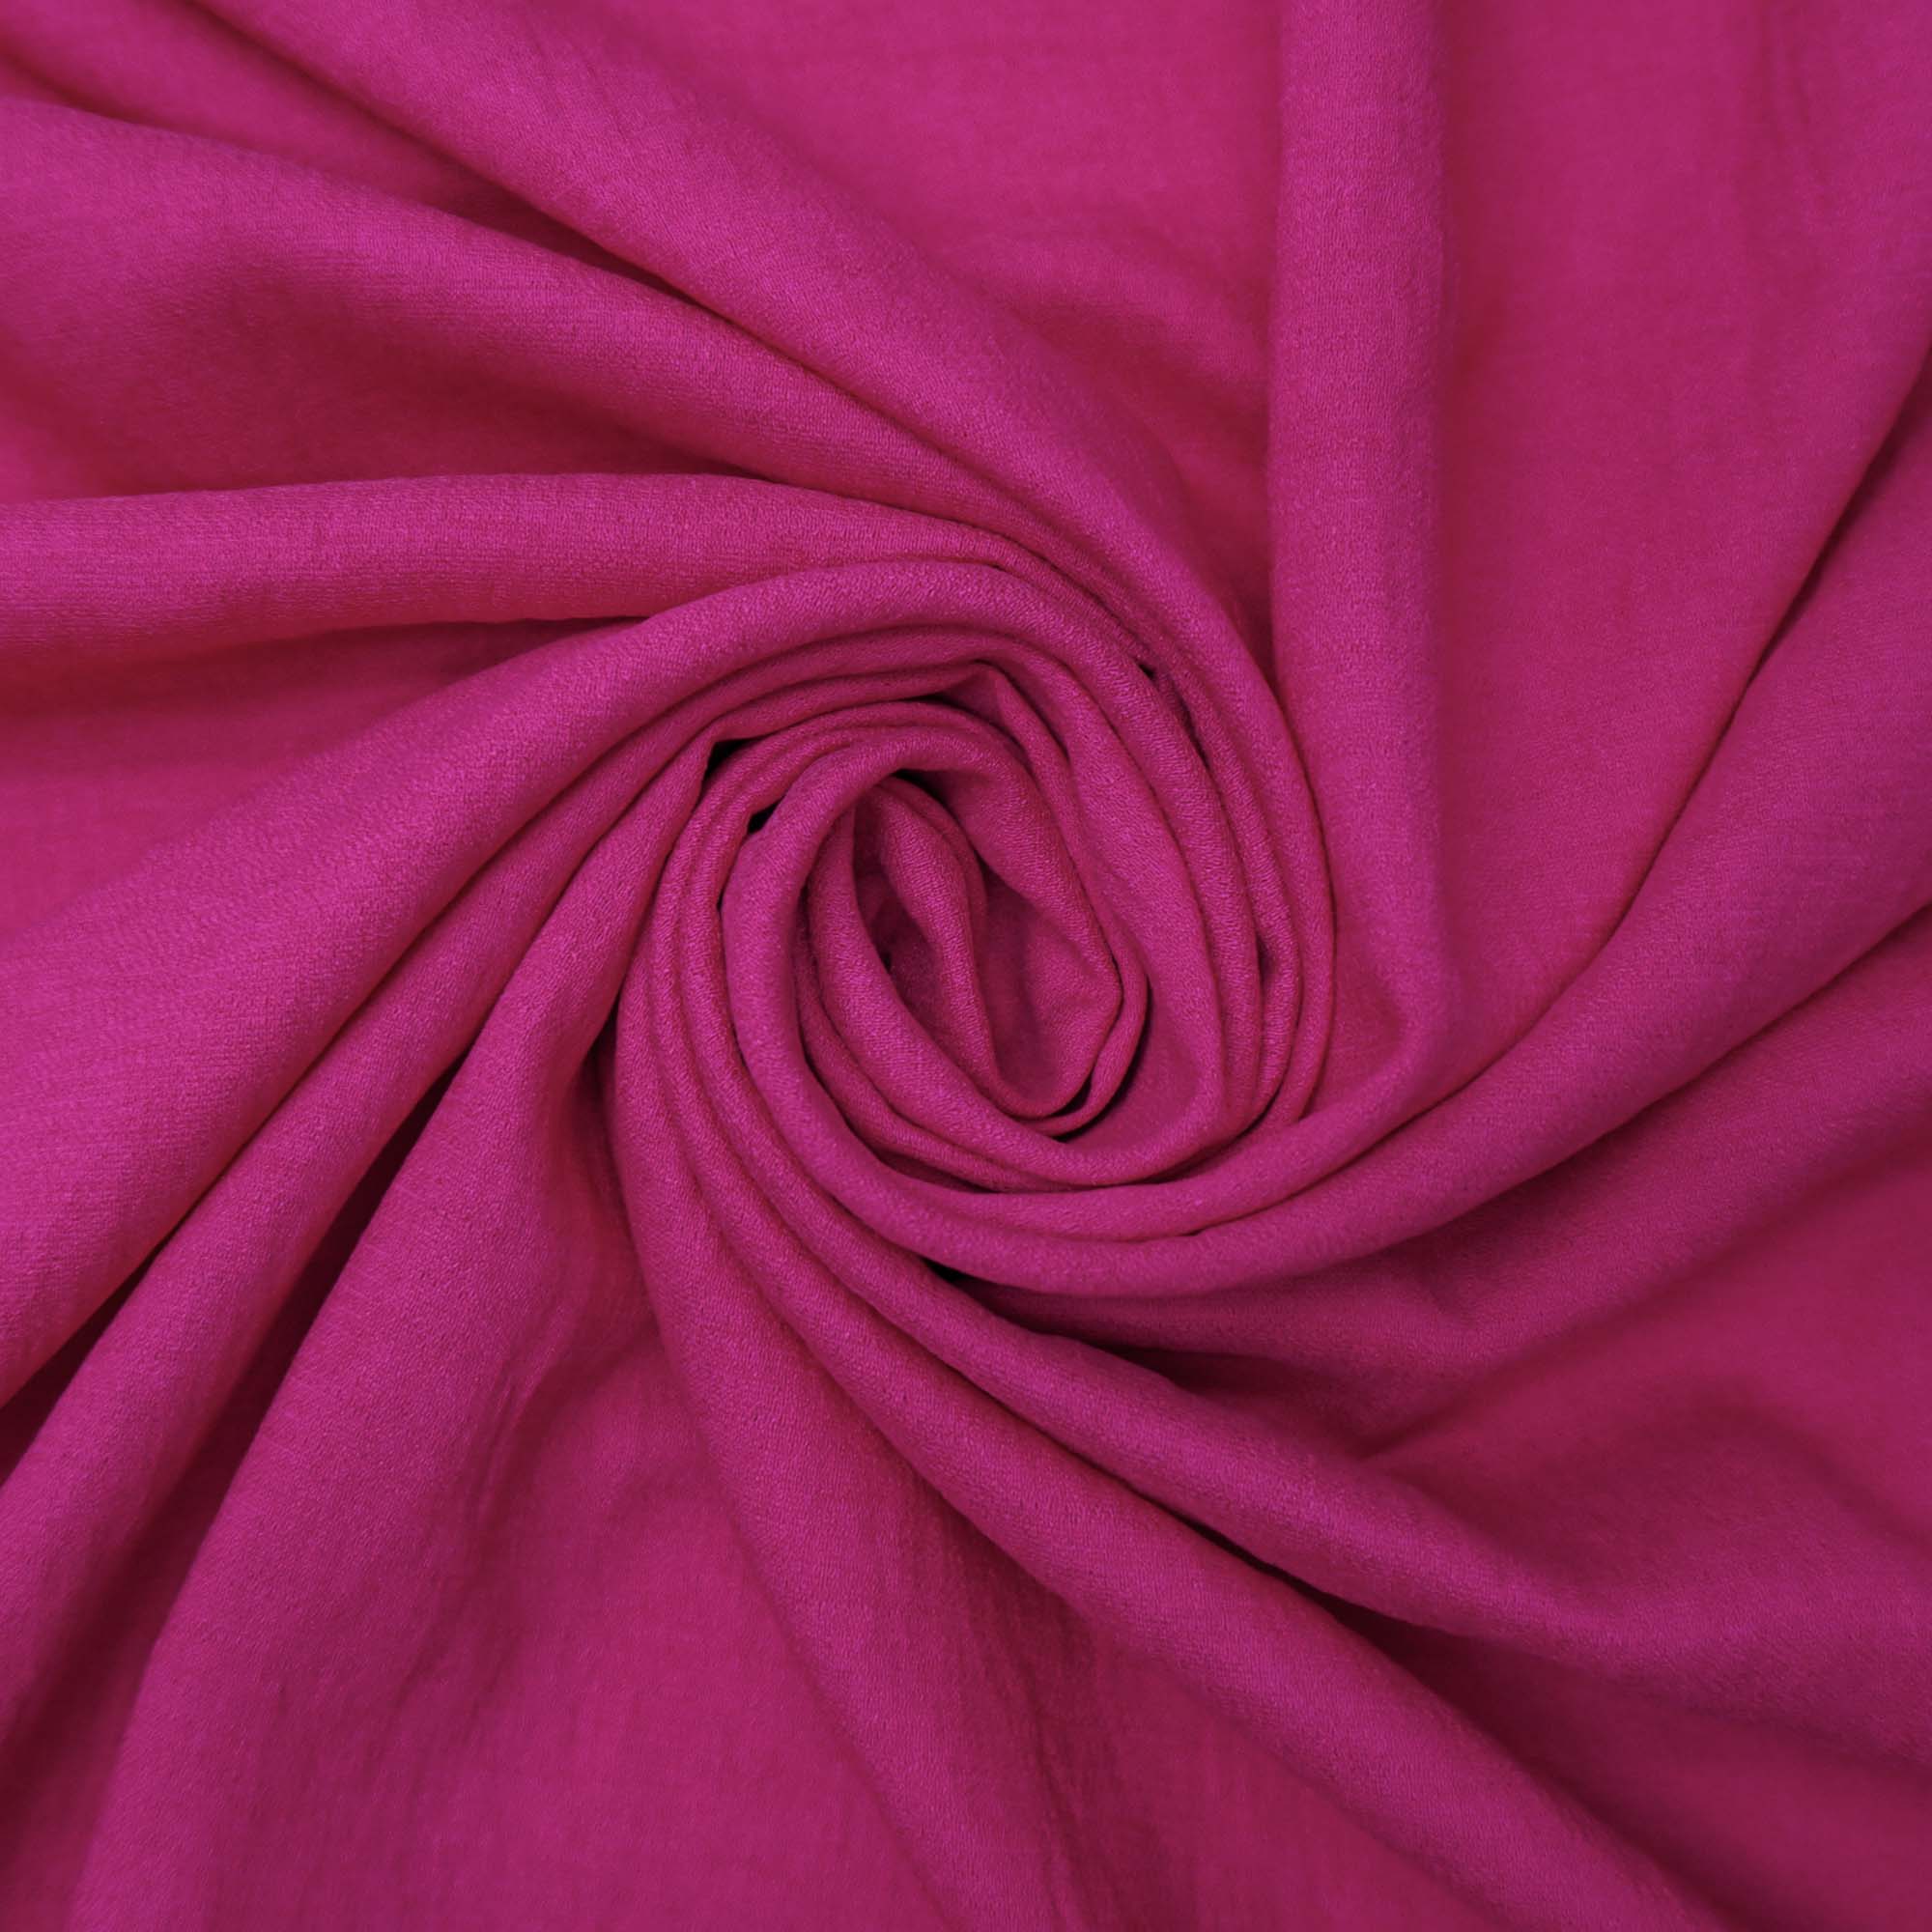 Tecido viscose twill textura de linho pink